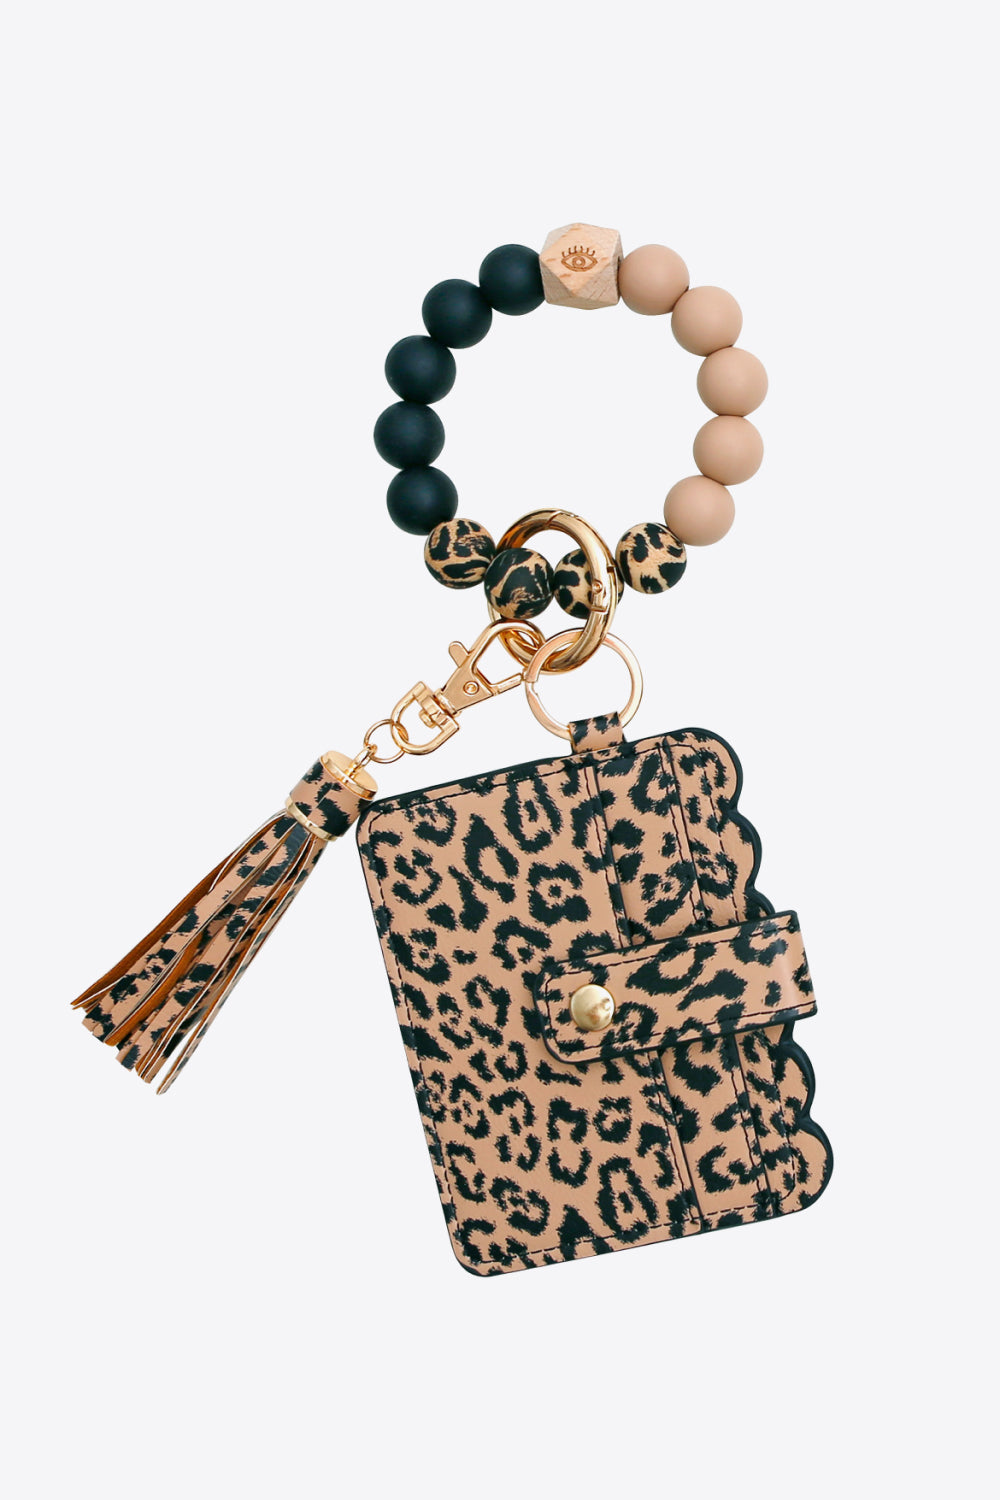 Trendsi Cupid Beauty Supplies Keychains Random 2-Pack Leopard Mini Purse Tassel Wristlet Key Chain